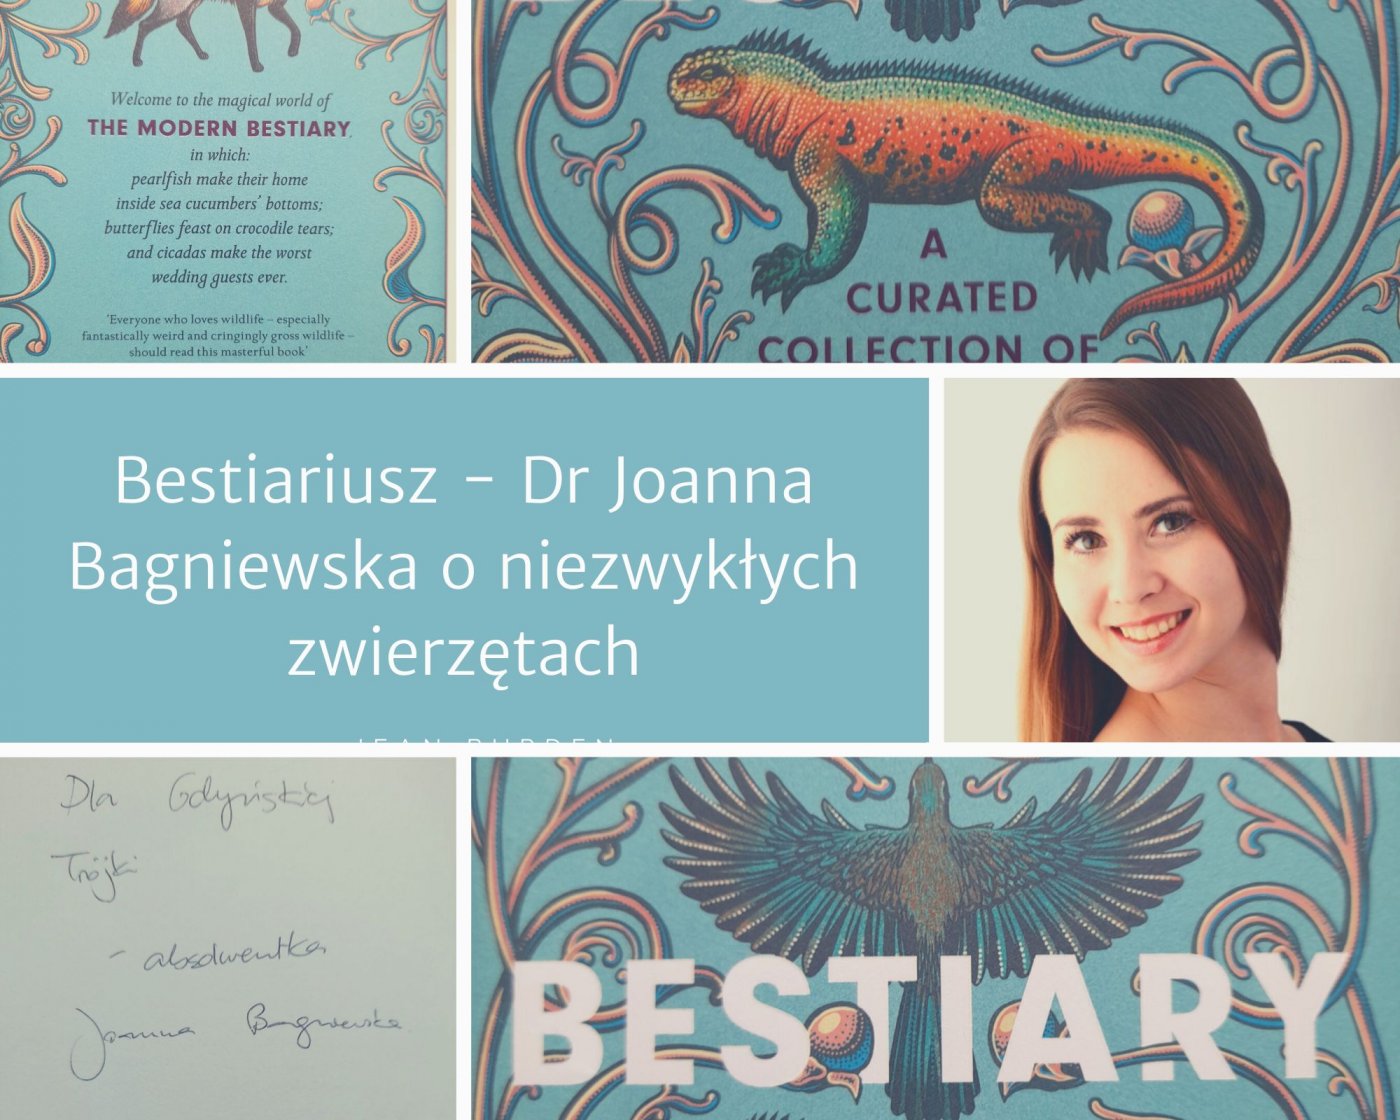 Zdjęcie dr Joanny Bagniewskiej oraz fragmenty okładki jej książki i dedykacja autorki // fot. III LO, kolaż ZK